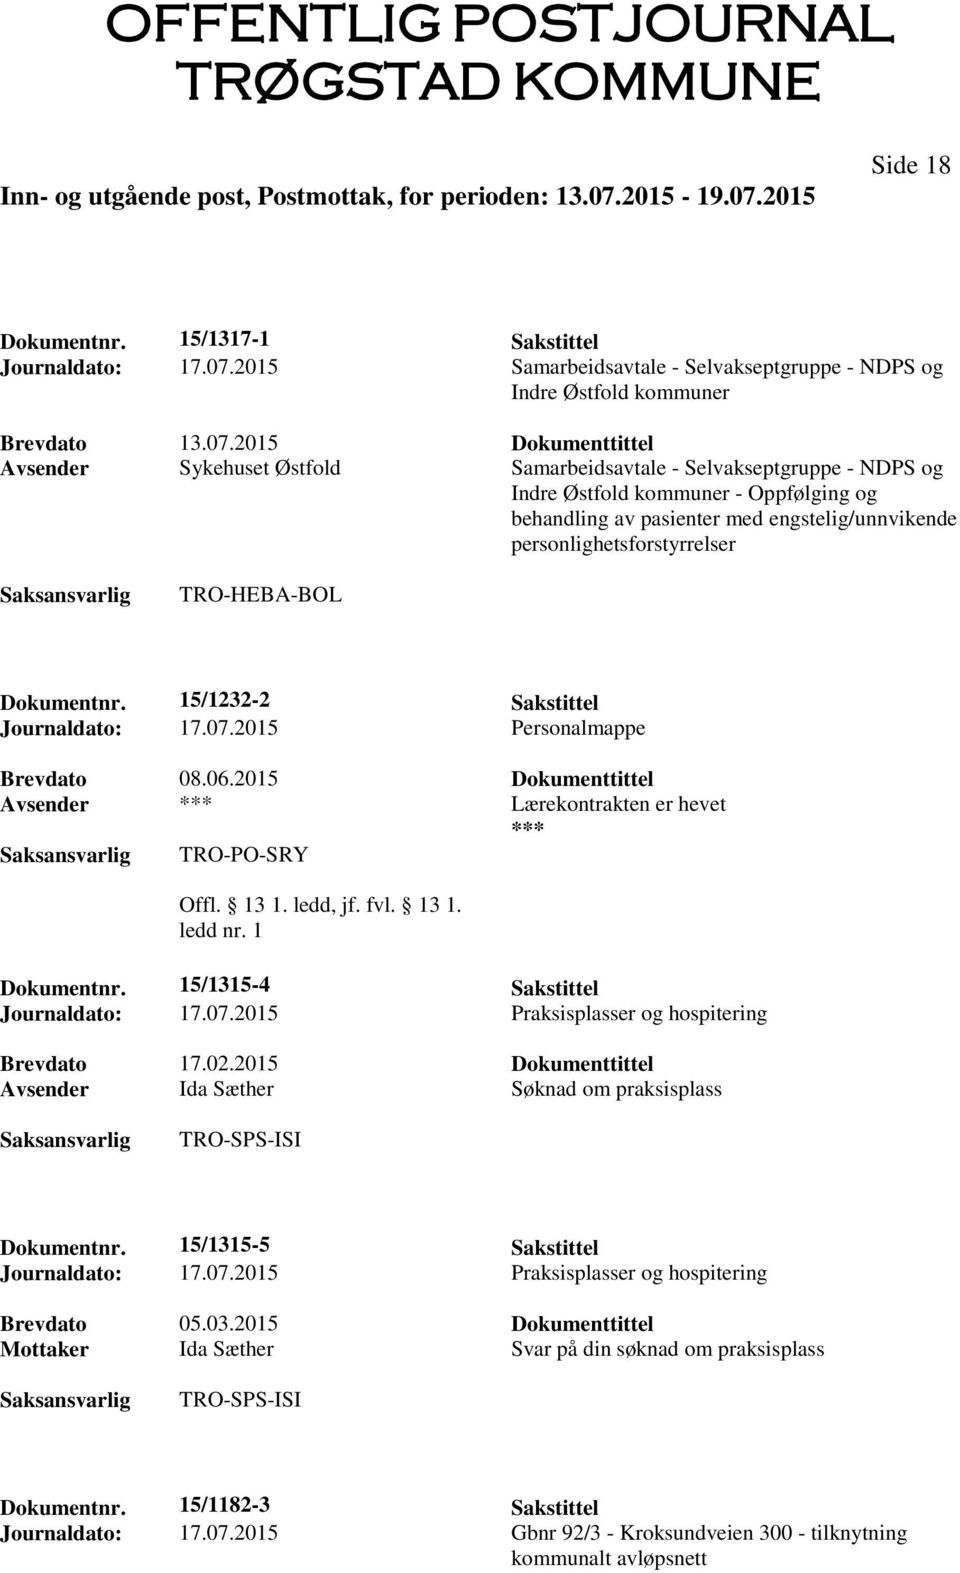 2015 Dokumenttittel Avsender Sykehuset Østfold Samarbeidsavtale - Selvakseptgruppe - NDPS og Indre Østfold kommuner - Oppfølging og behandling av pasienter med engstelig/unnvikende